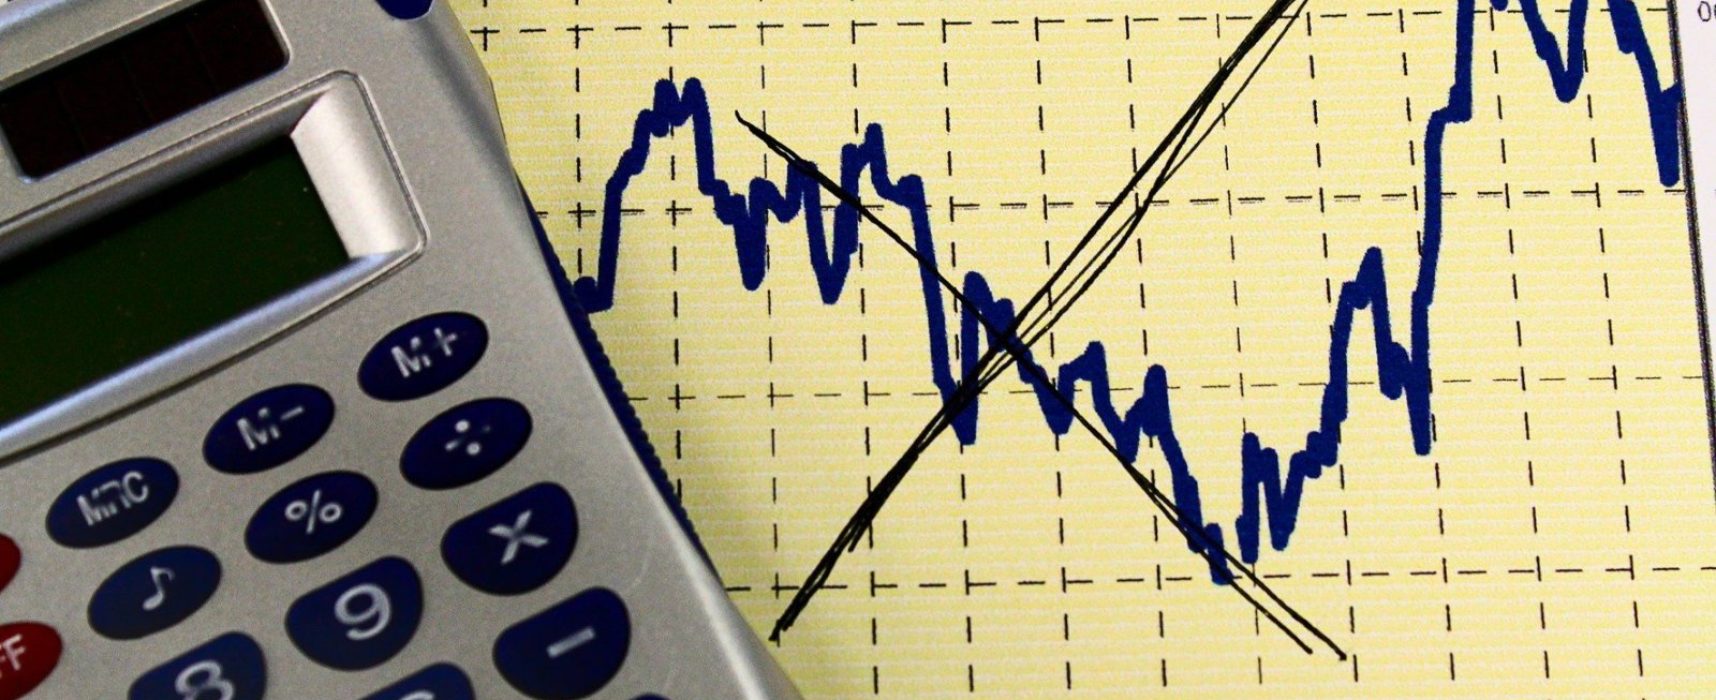 Atividade econômica cresce 0,44% em abril, diz BC